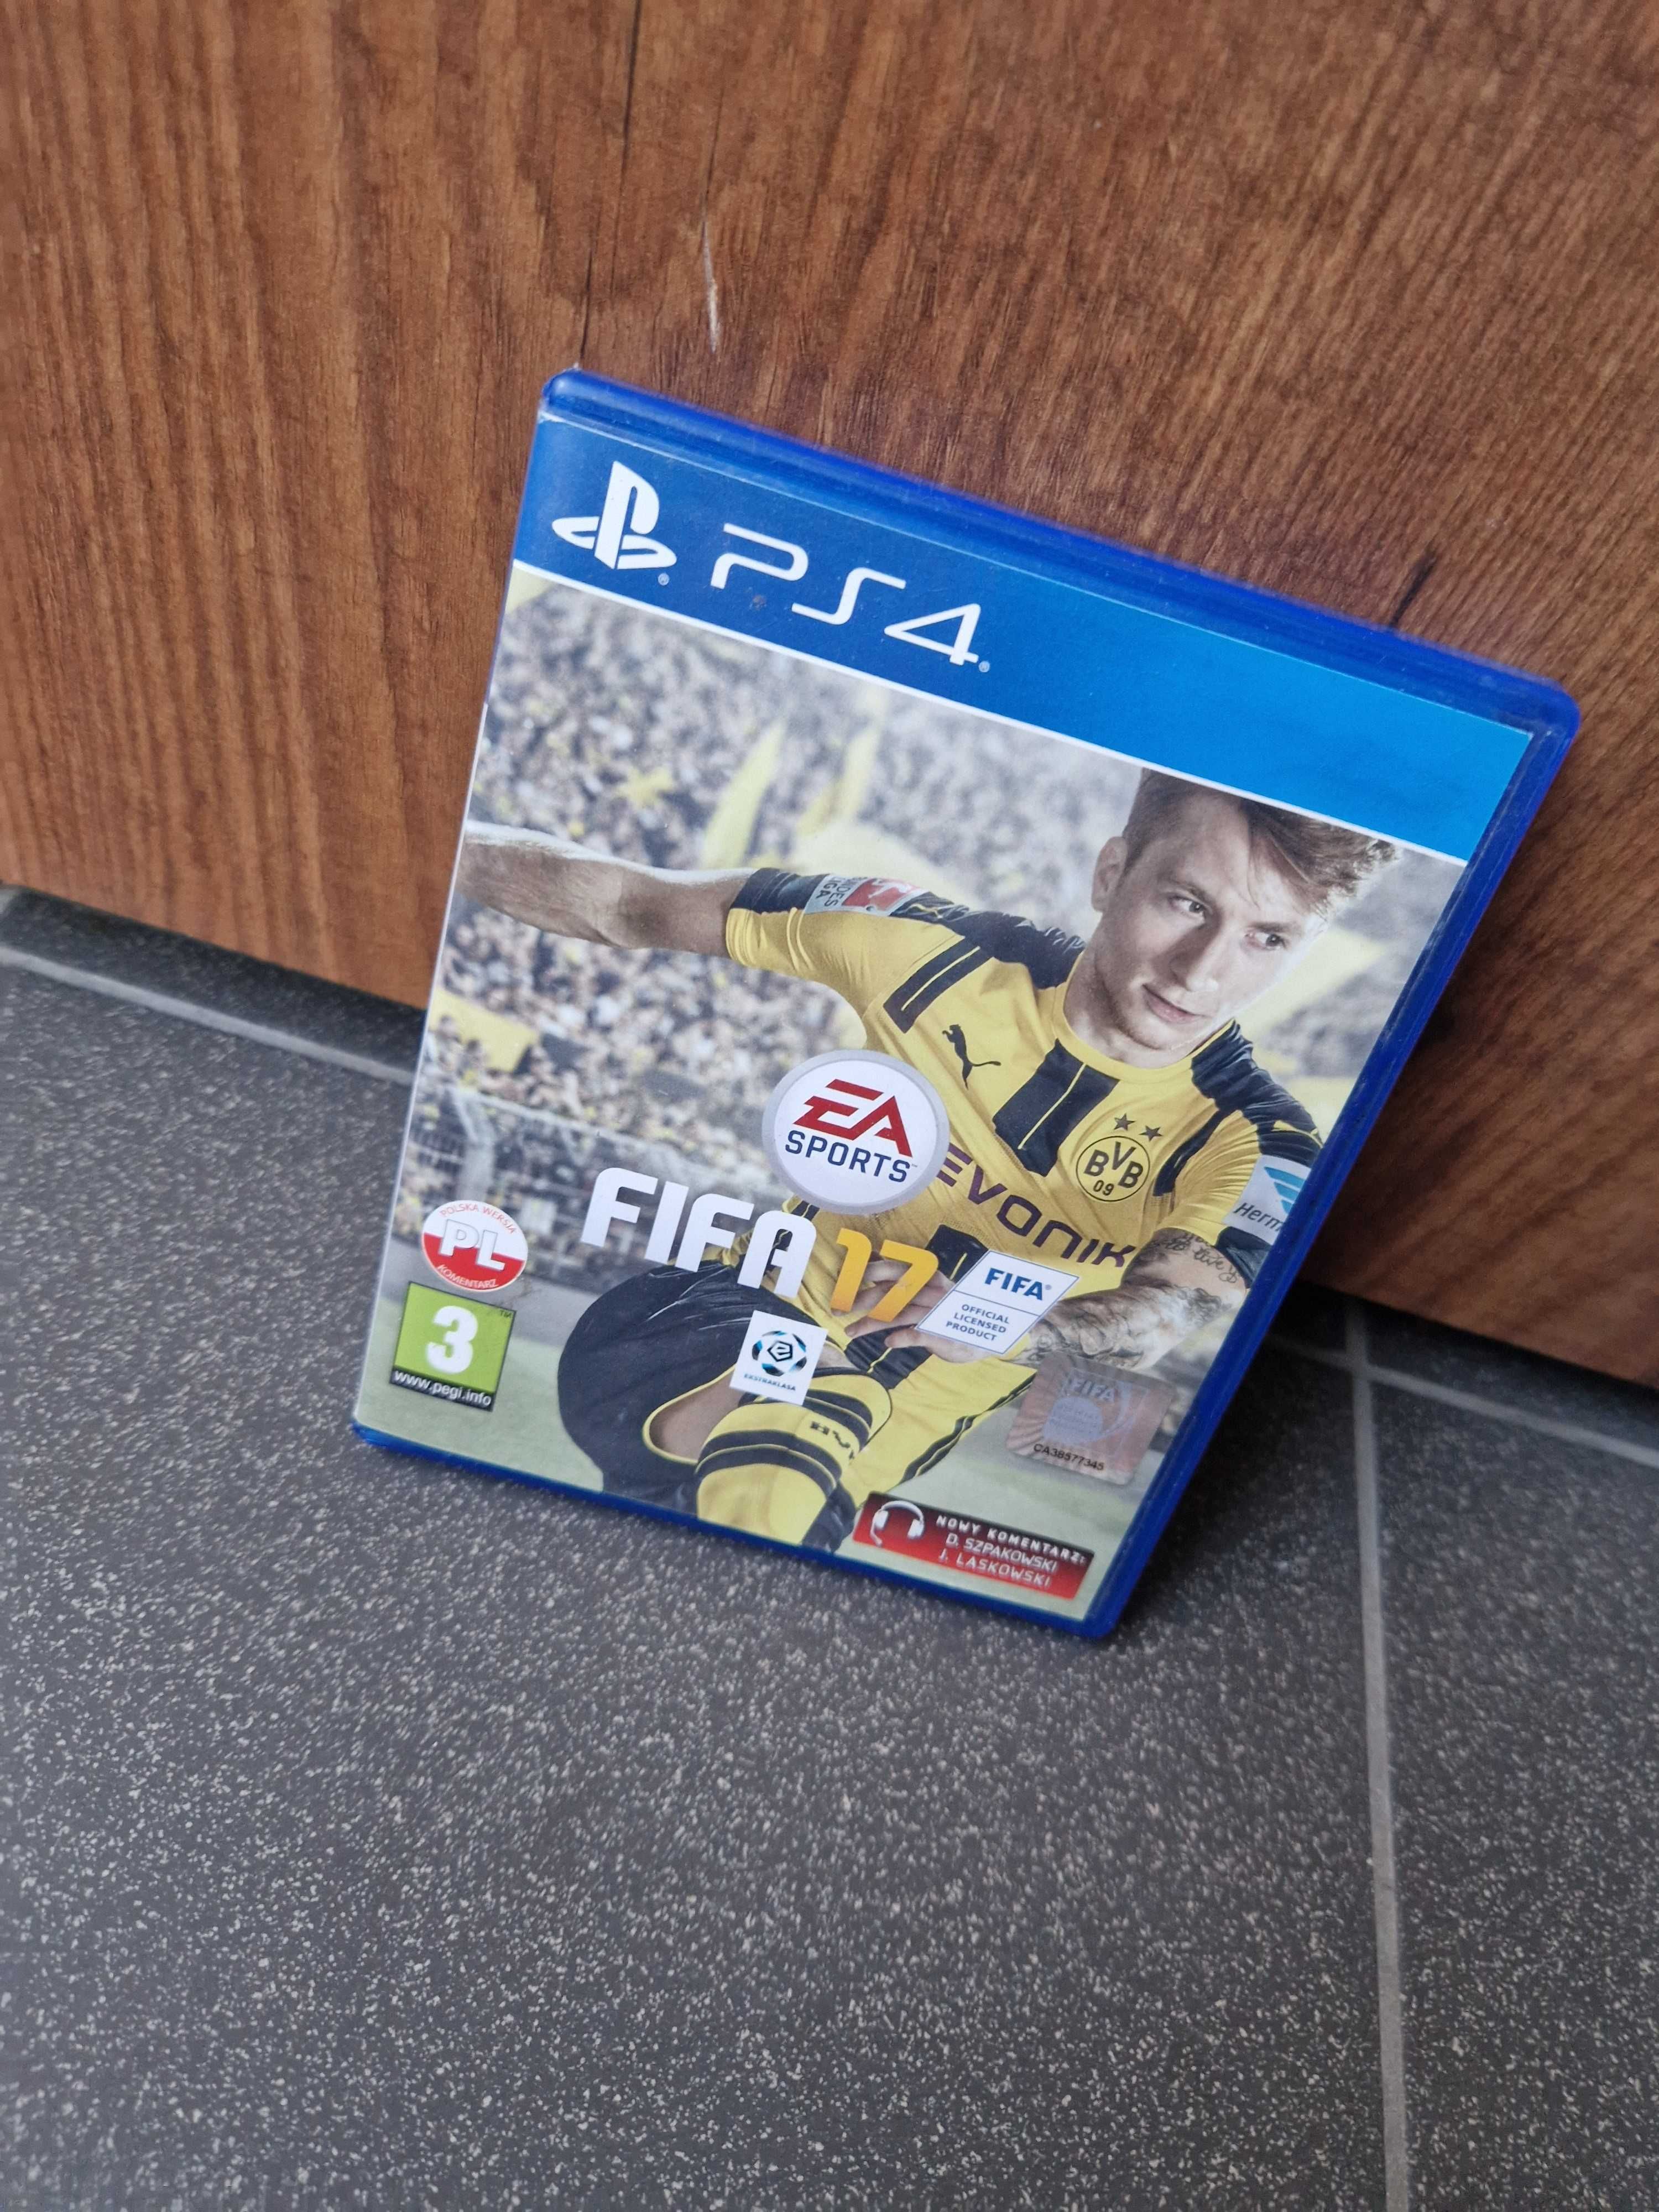 Gra FIFA 17 na konsolę PS4